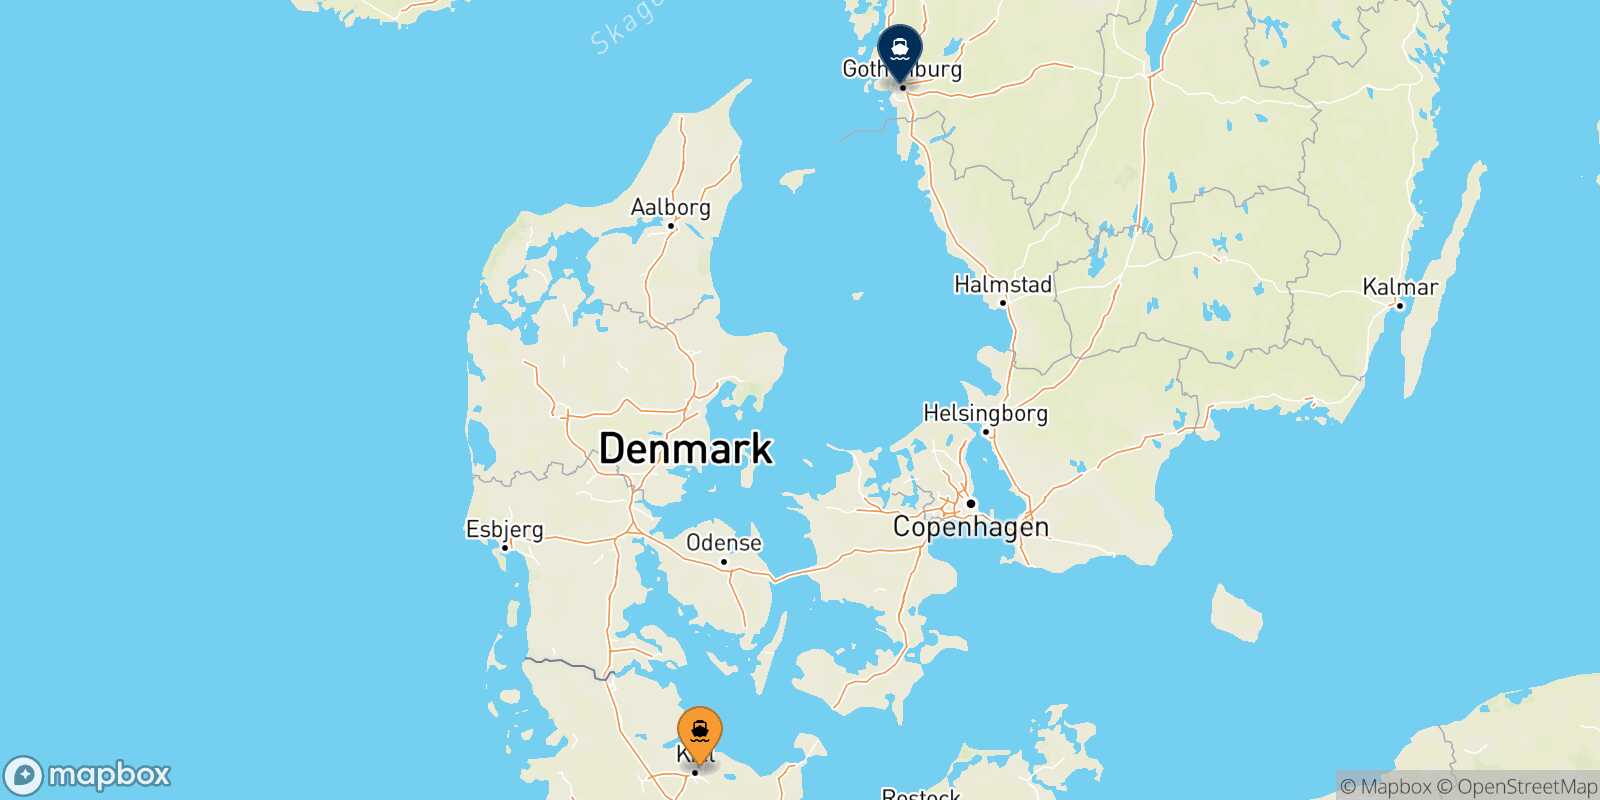 Mappa dei porti collegati con  Goteborg